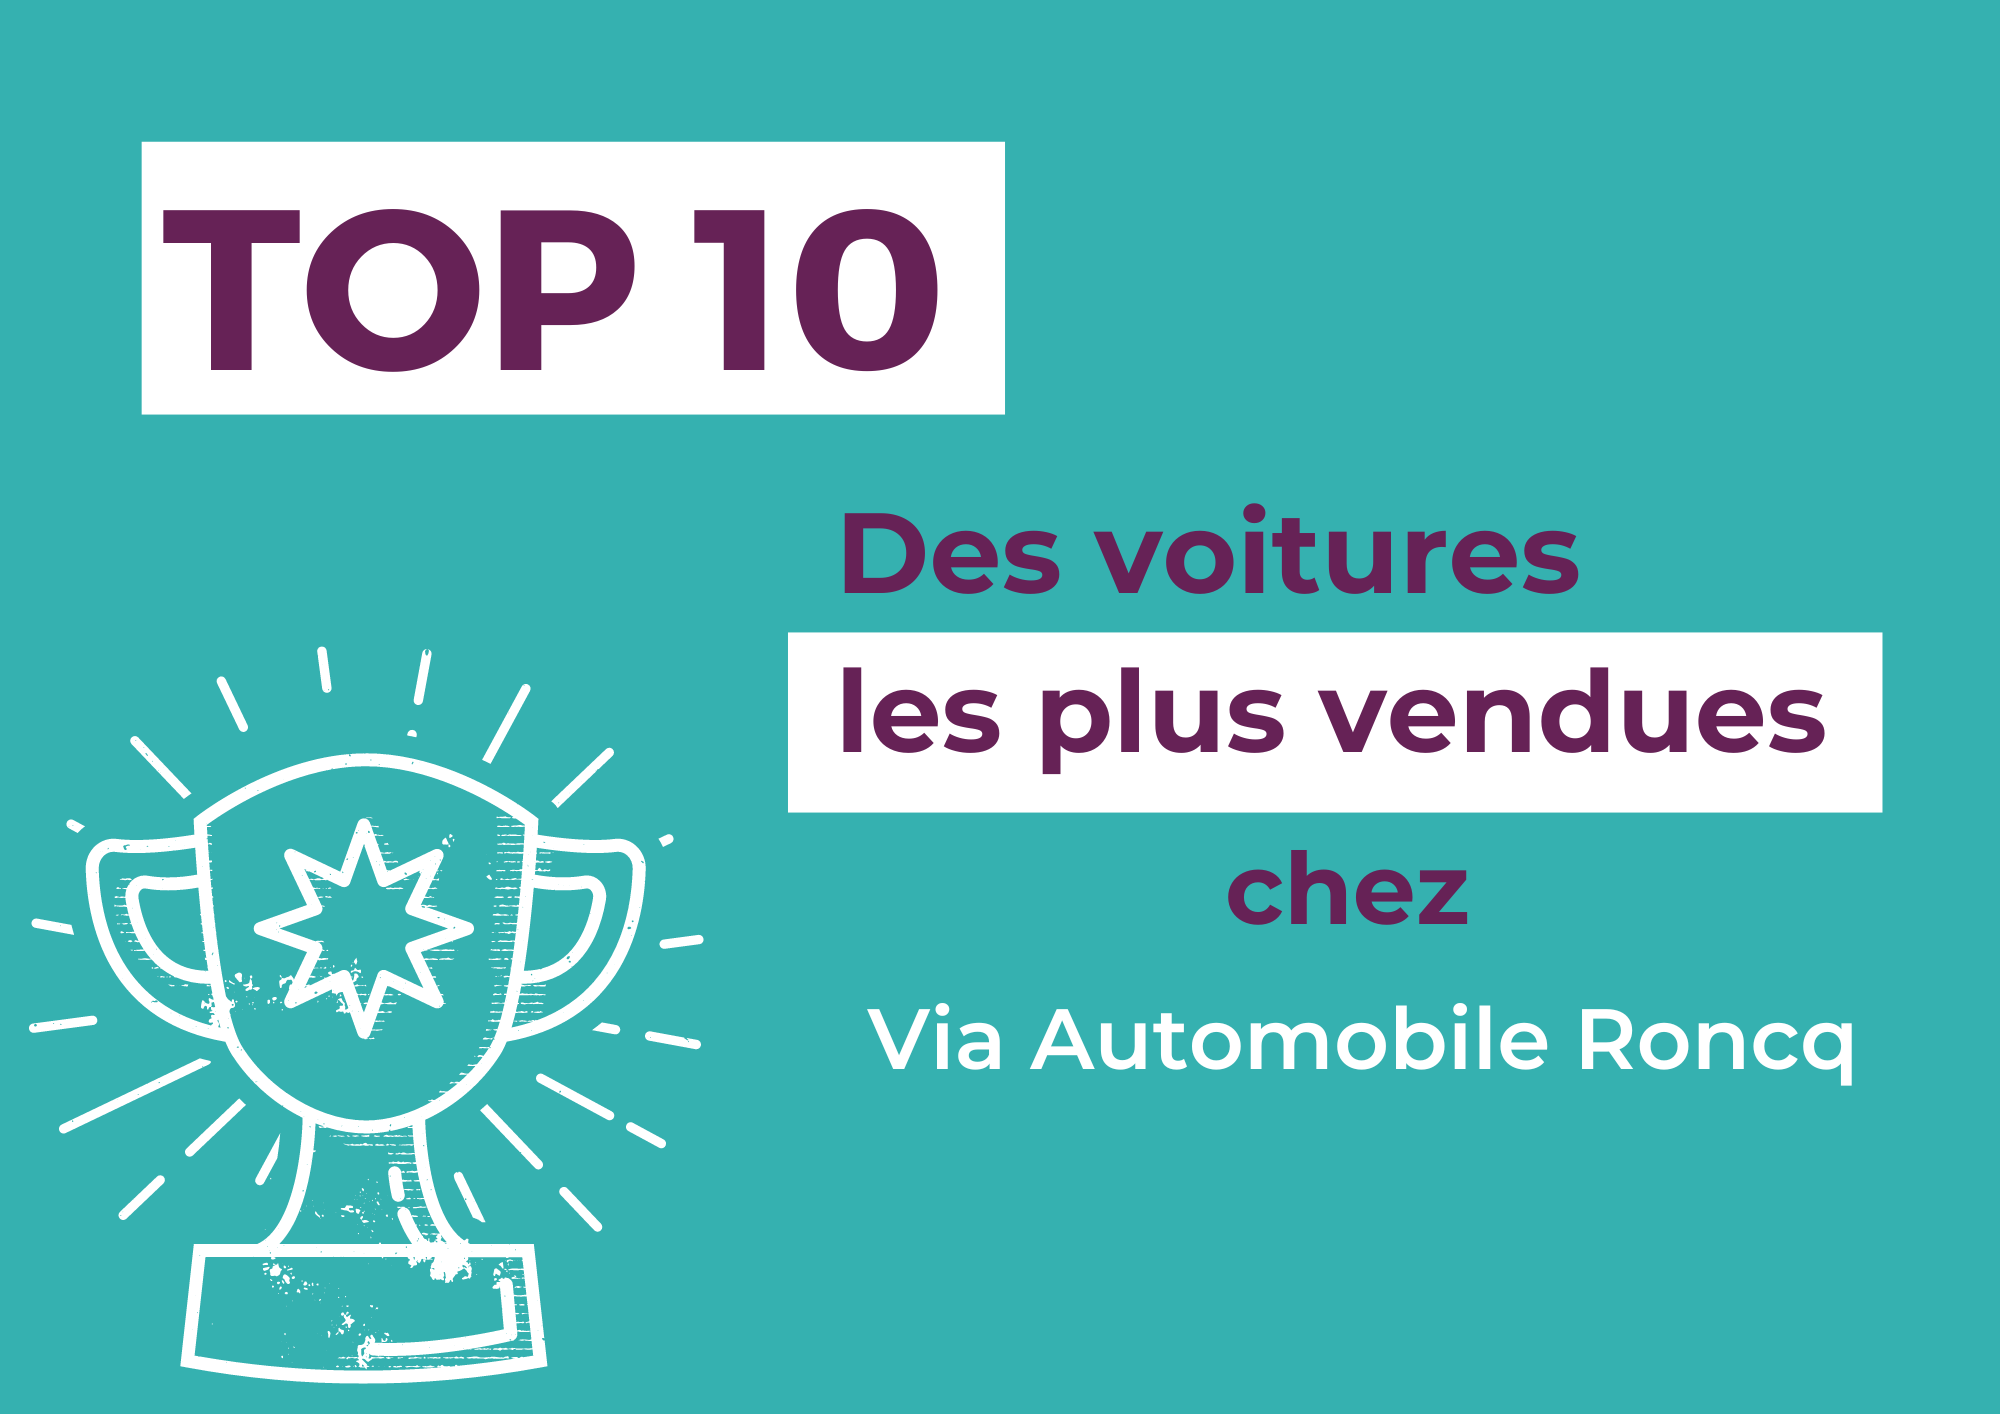 Top 10 Via Automobile Roncq